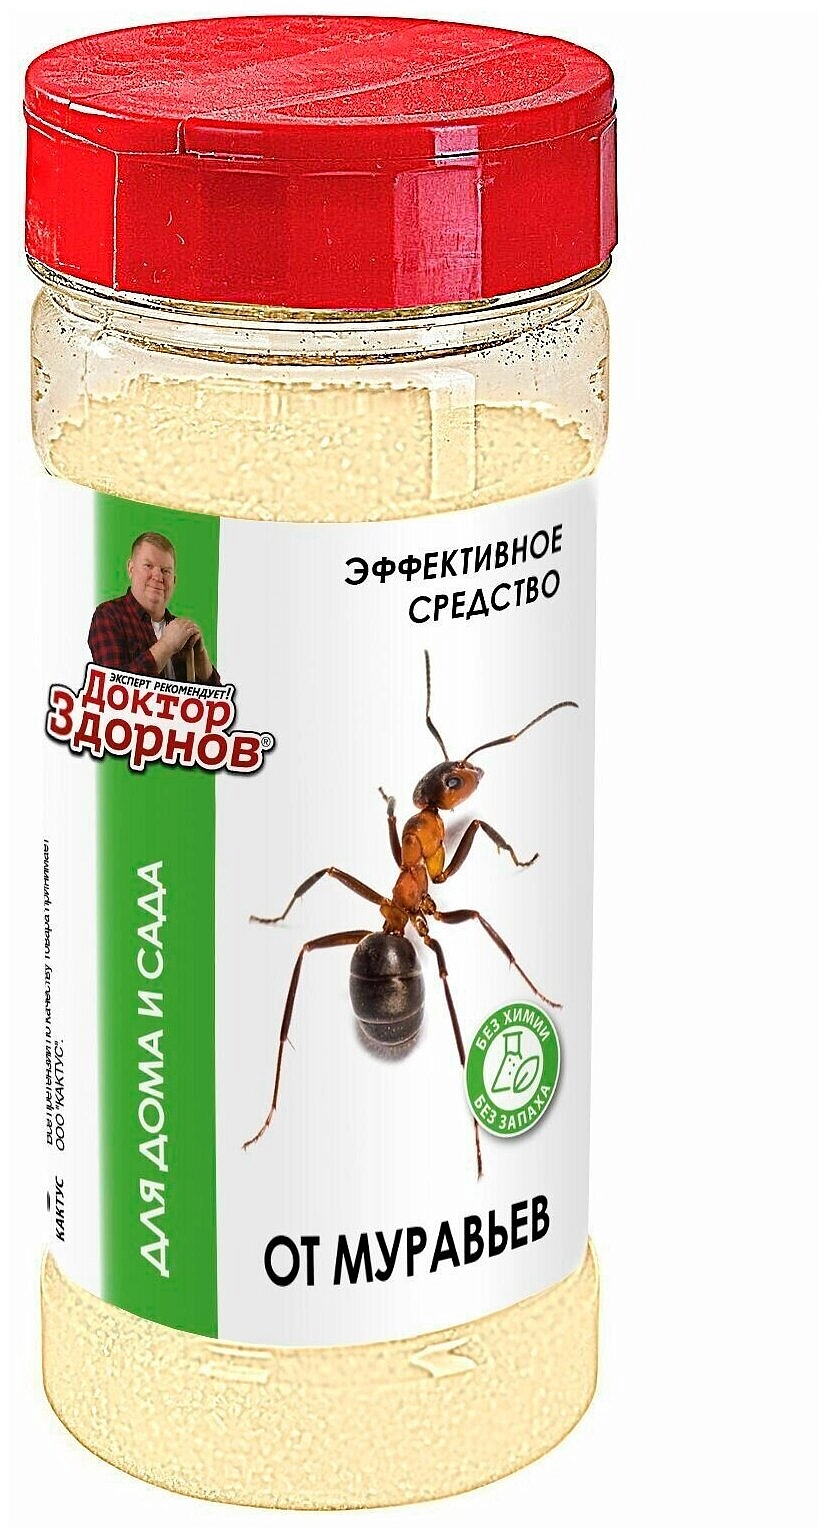 Инсектицид Доктор Здорнов от муравьев